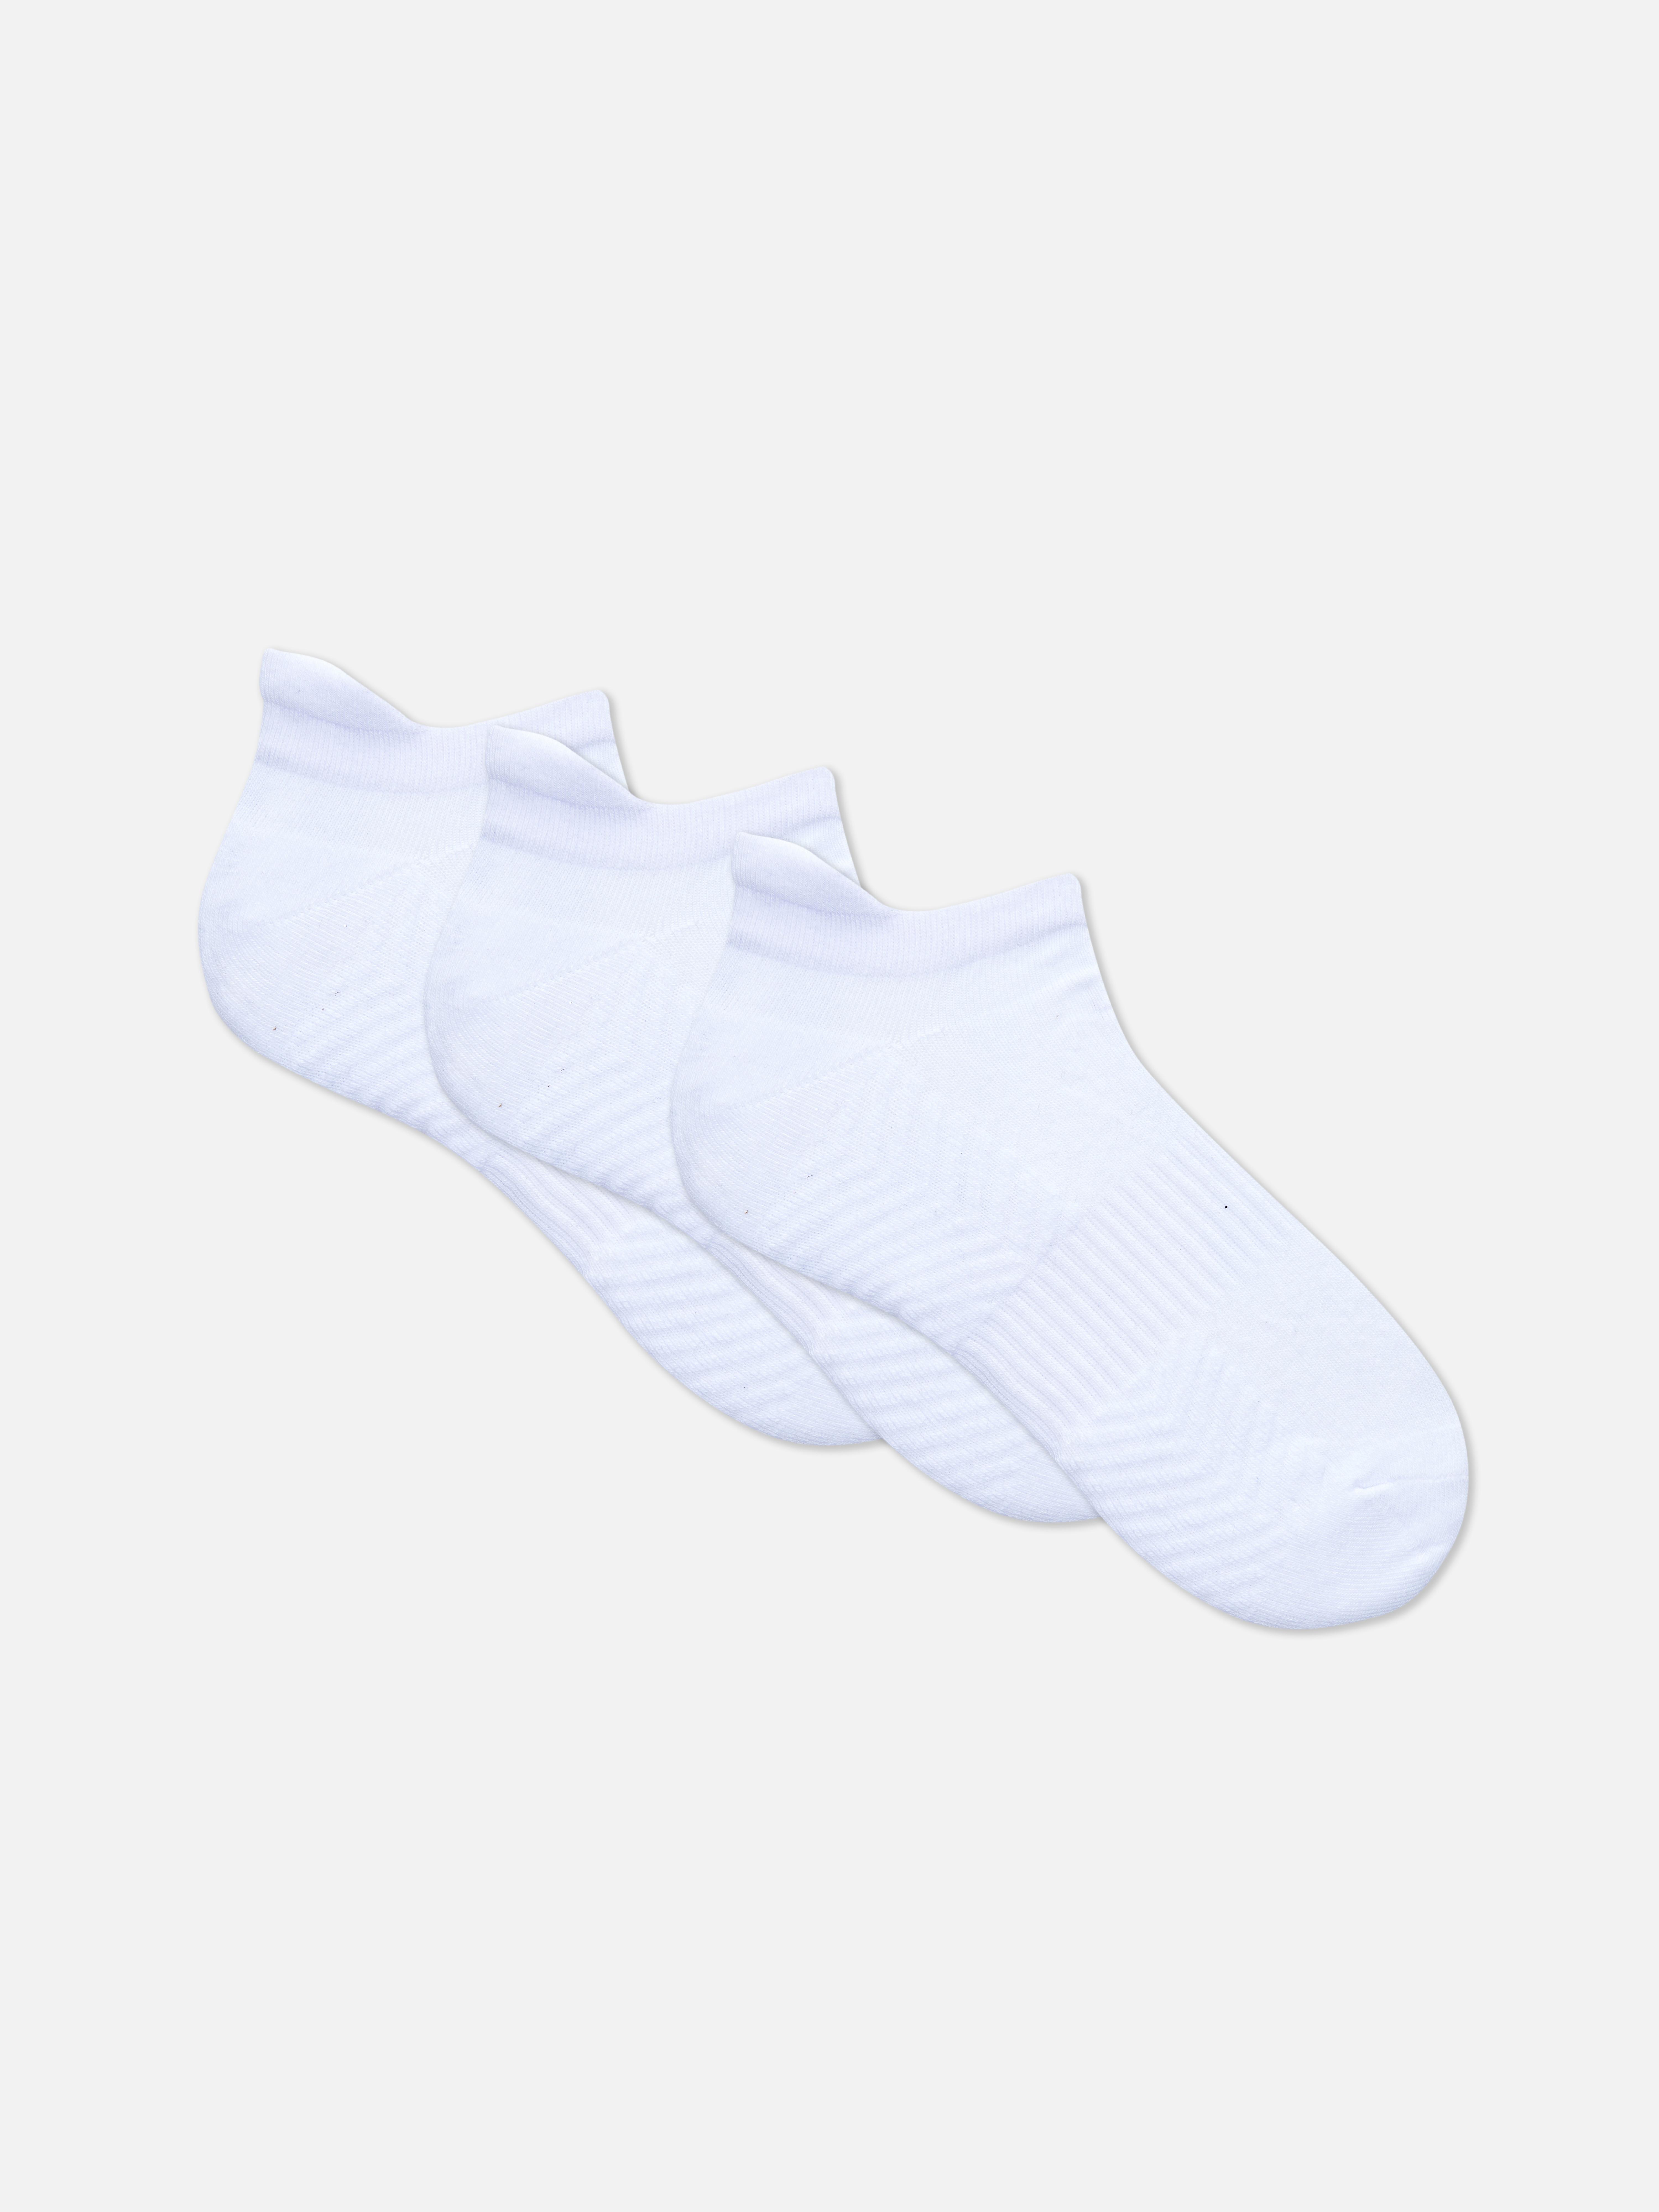 Sneaker Socken mit Polsterung, 3er-Pack Weiß